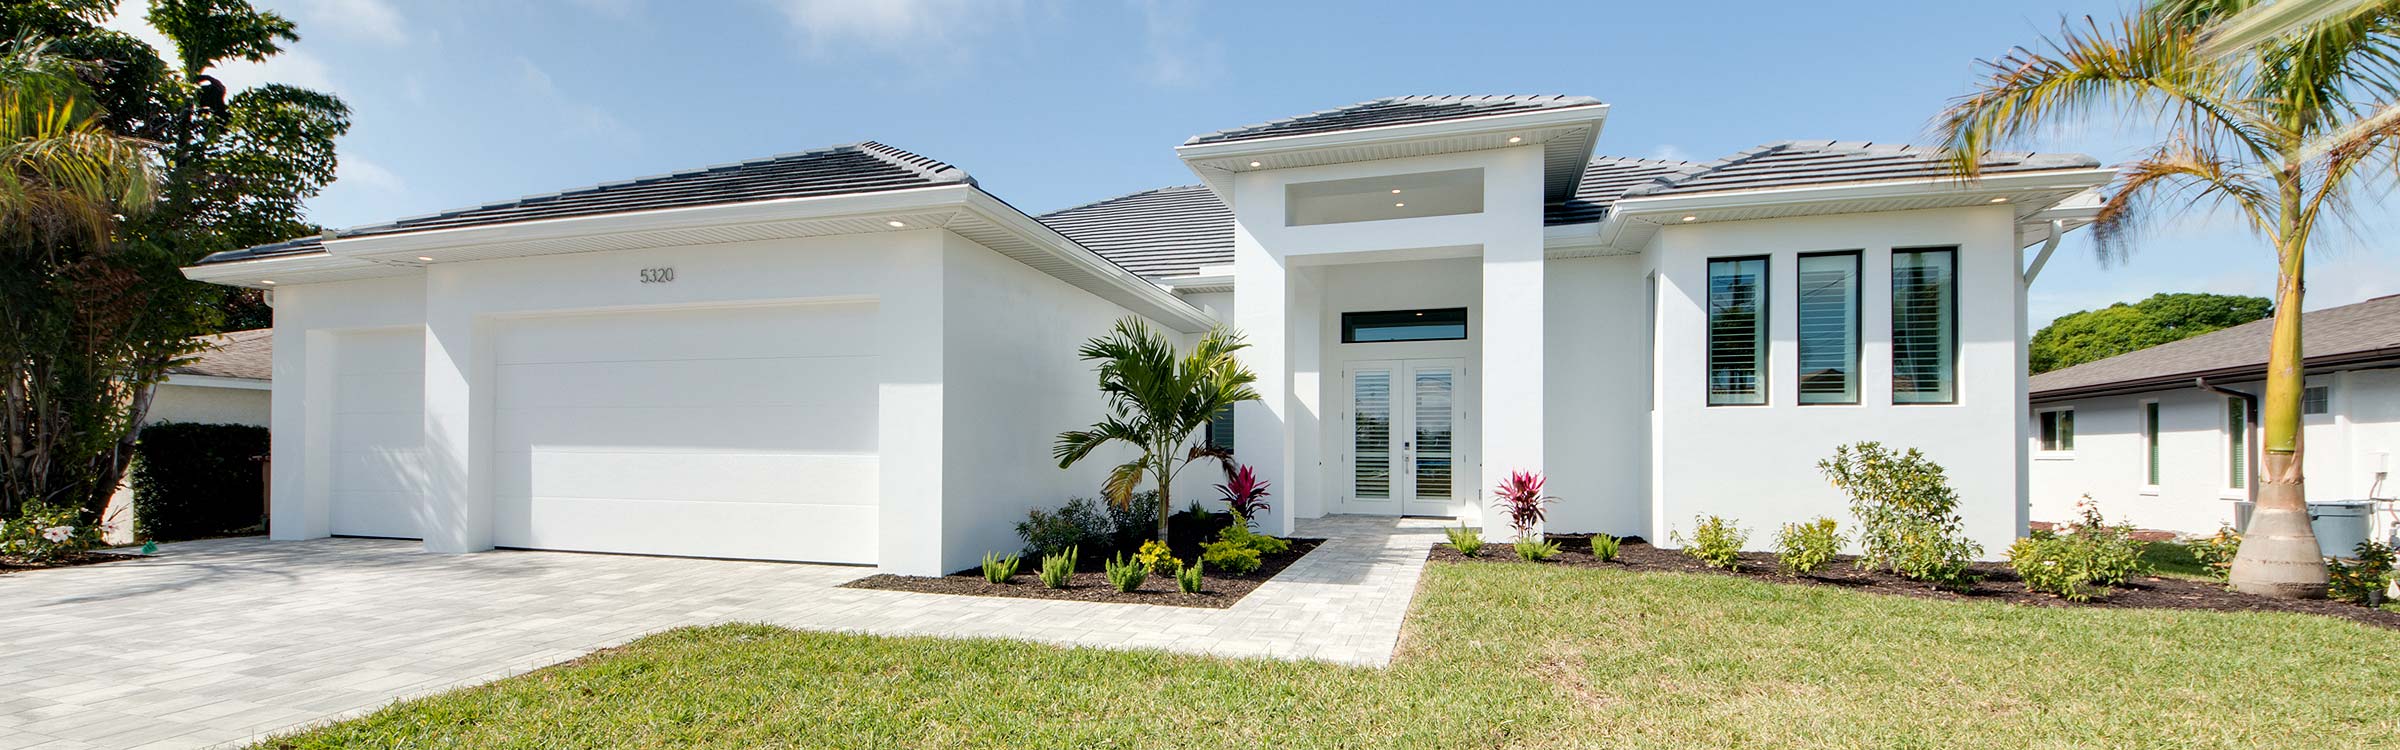 Florida Immobilien - welche Kosten kommen auf sie zu?